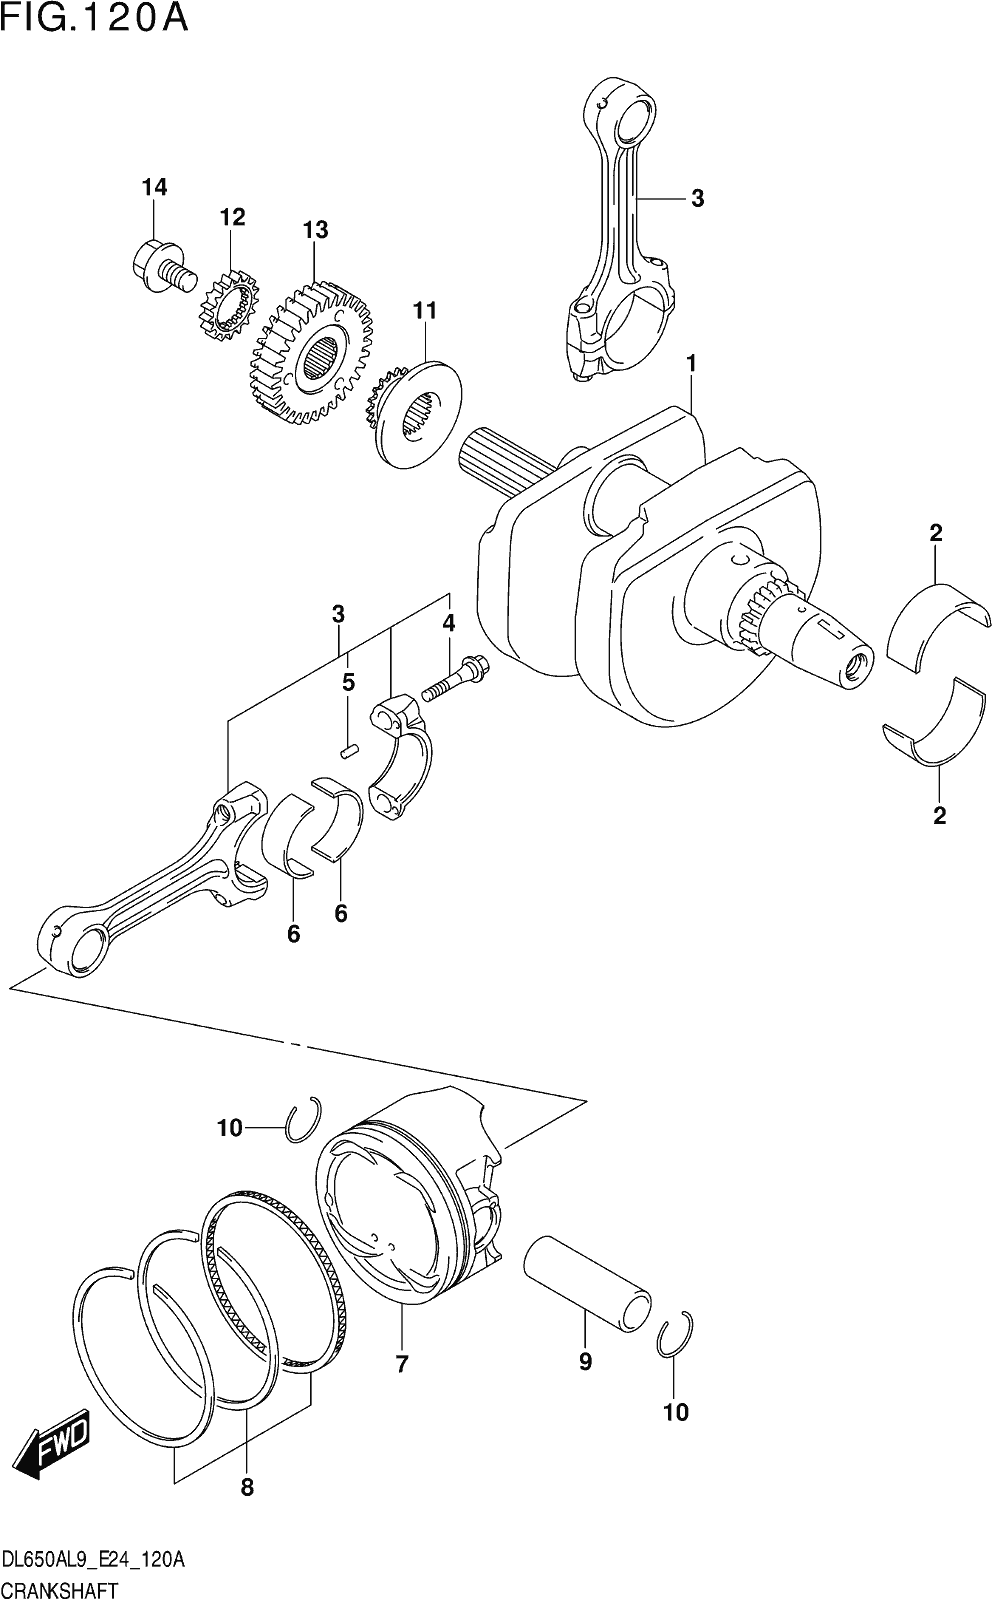 Fig.120a Crankshaft